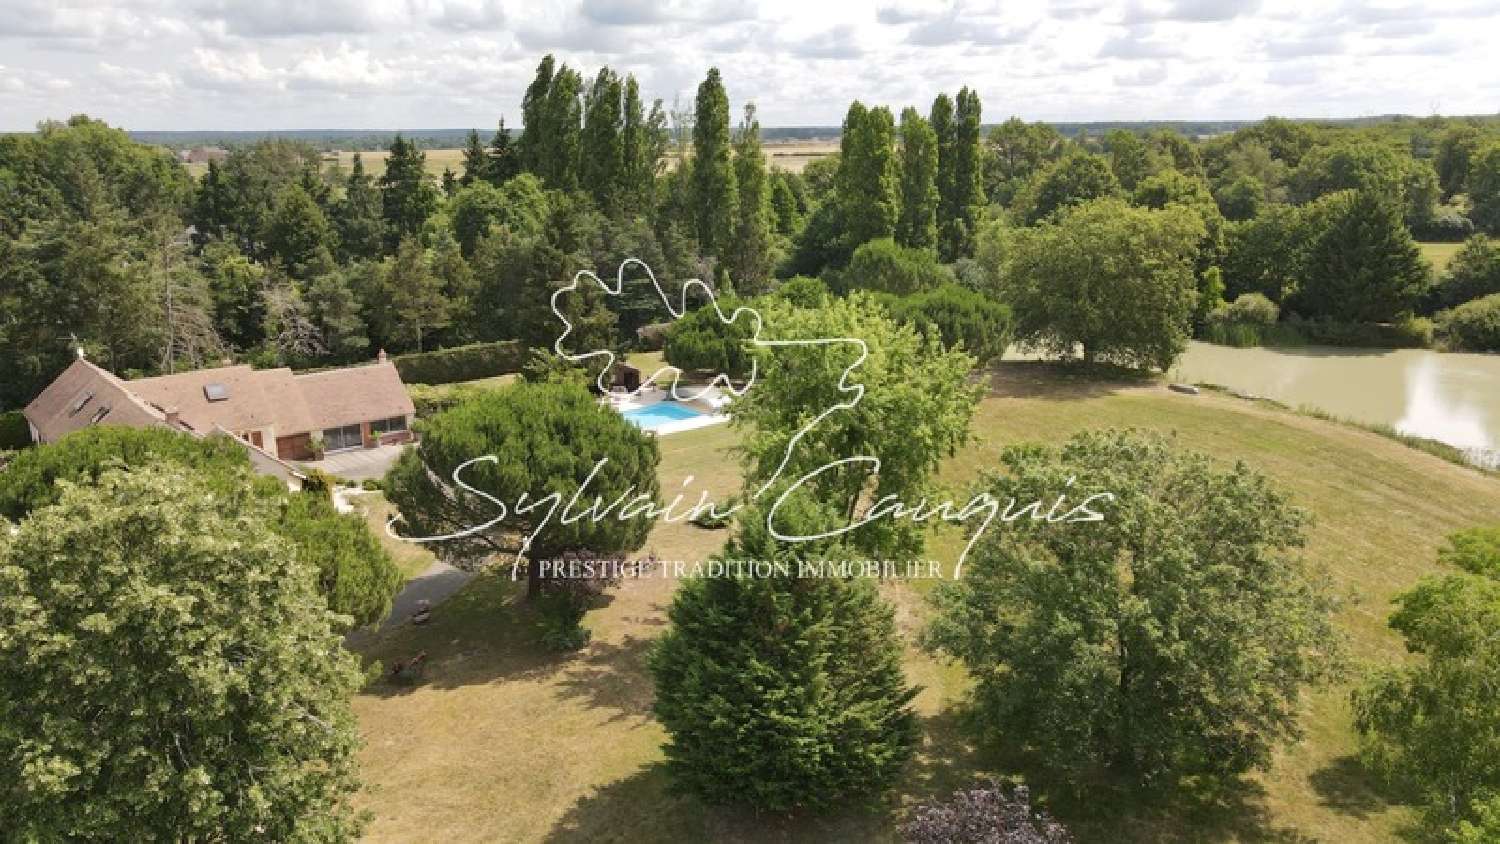  à vendre propriété Sully-sur-Loire Loiret 1